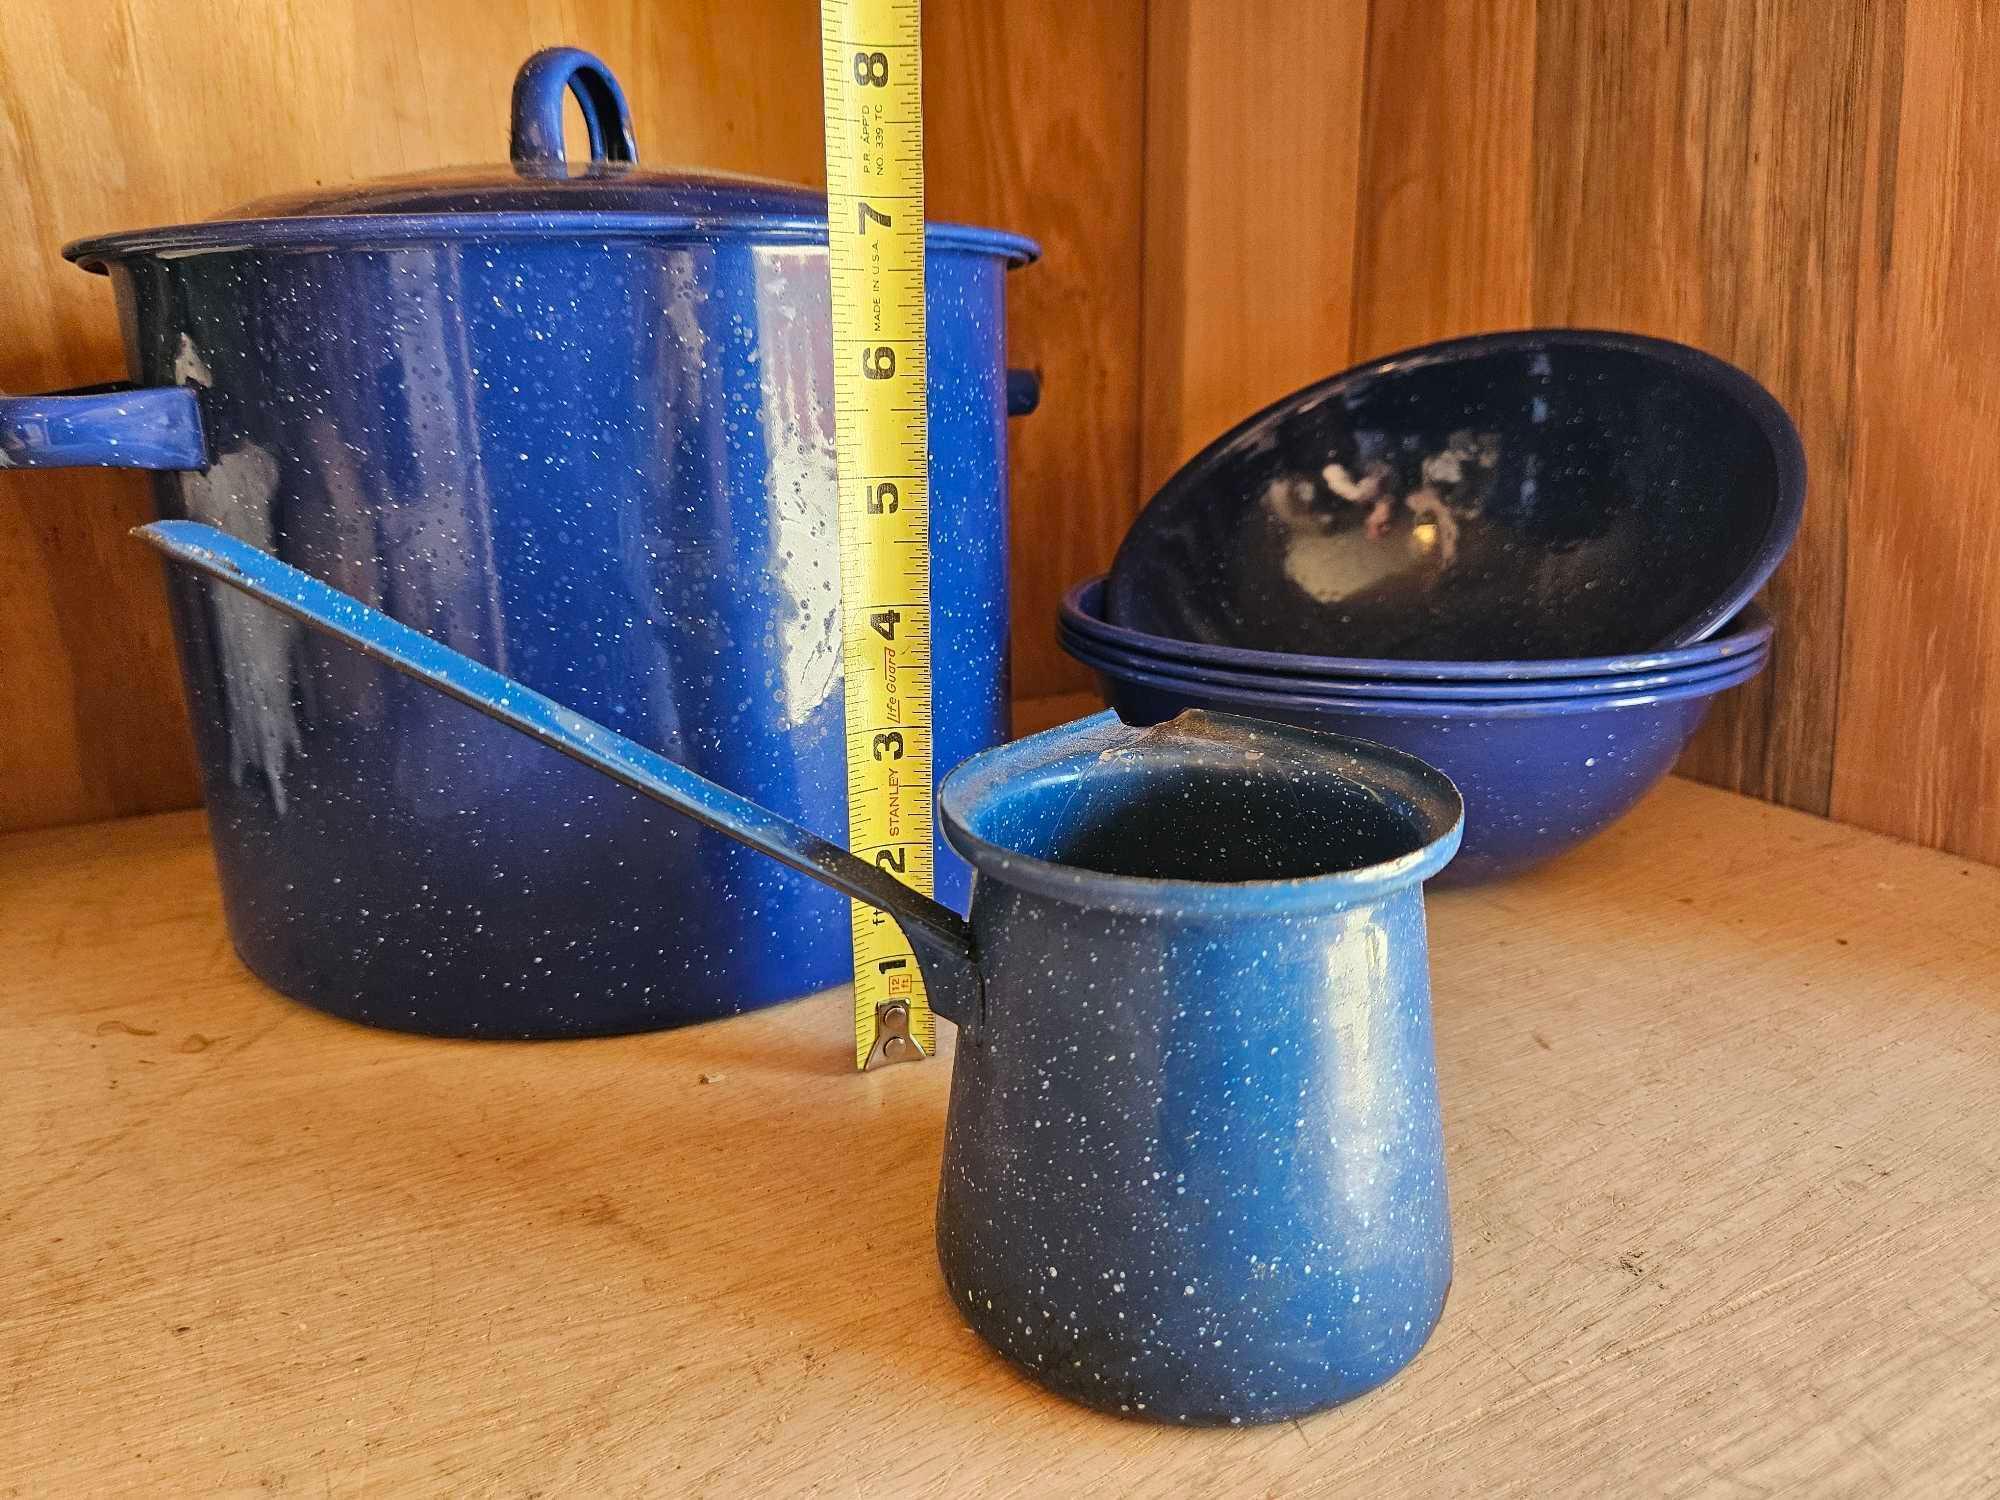 Blue Enamel pot, bowls, pourer